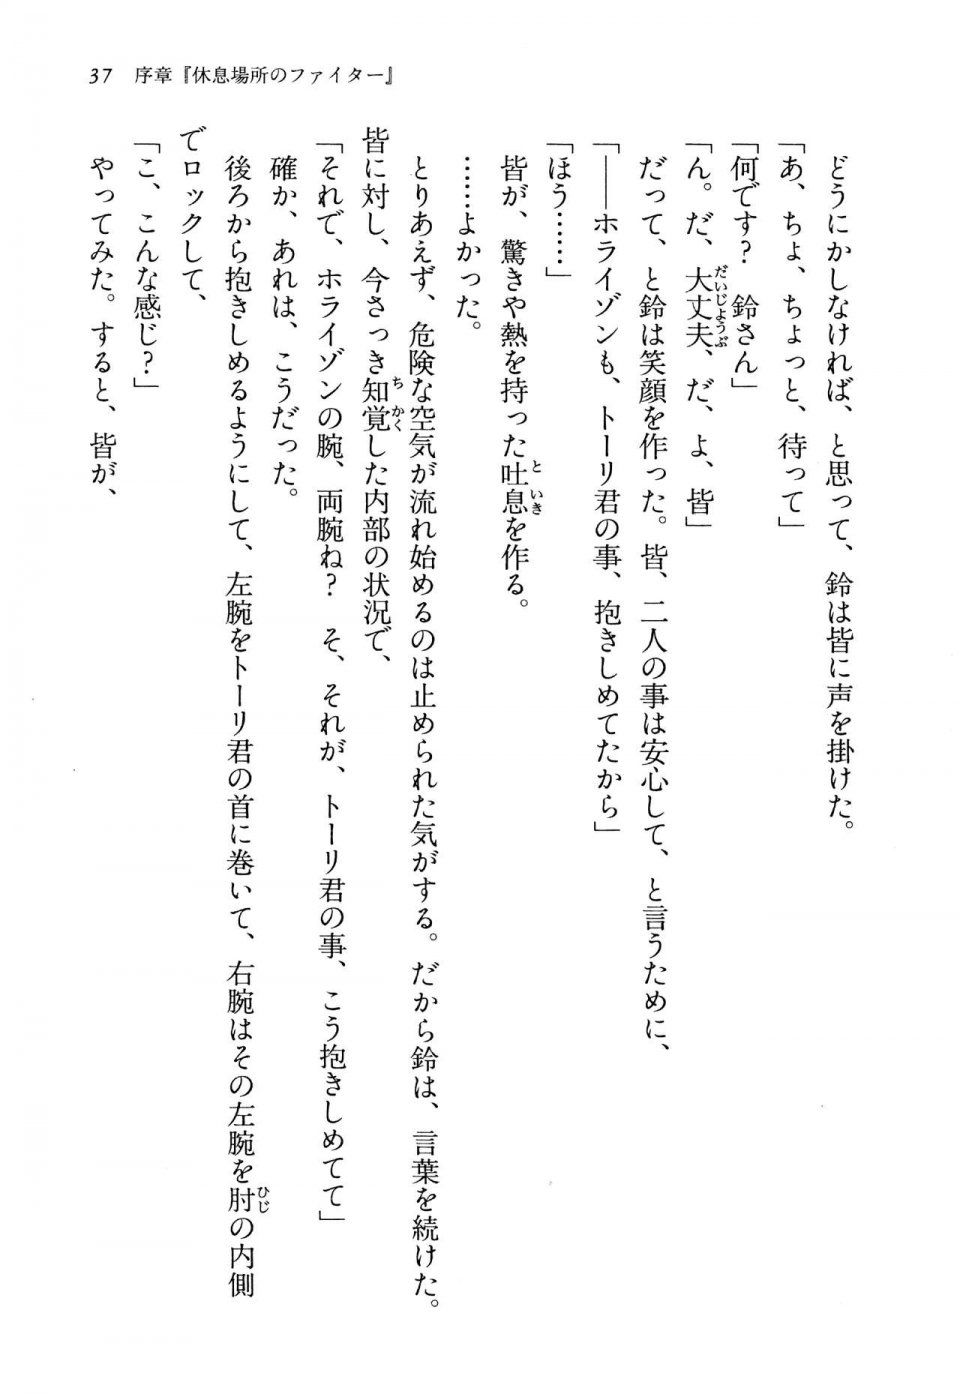 Kyoukai Senjou no Horizon LN Vol 13(6A) - Photo #37